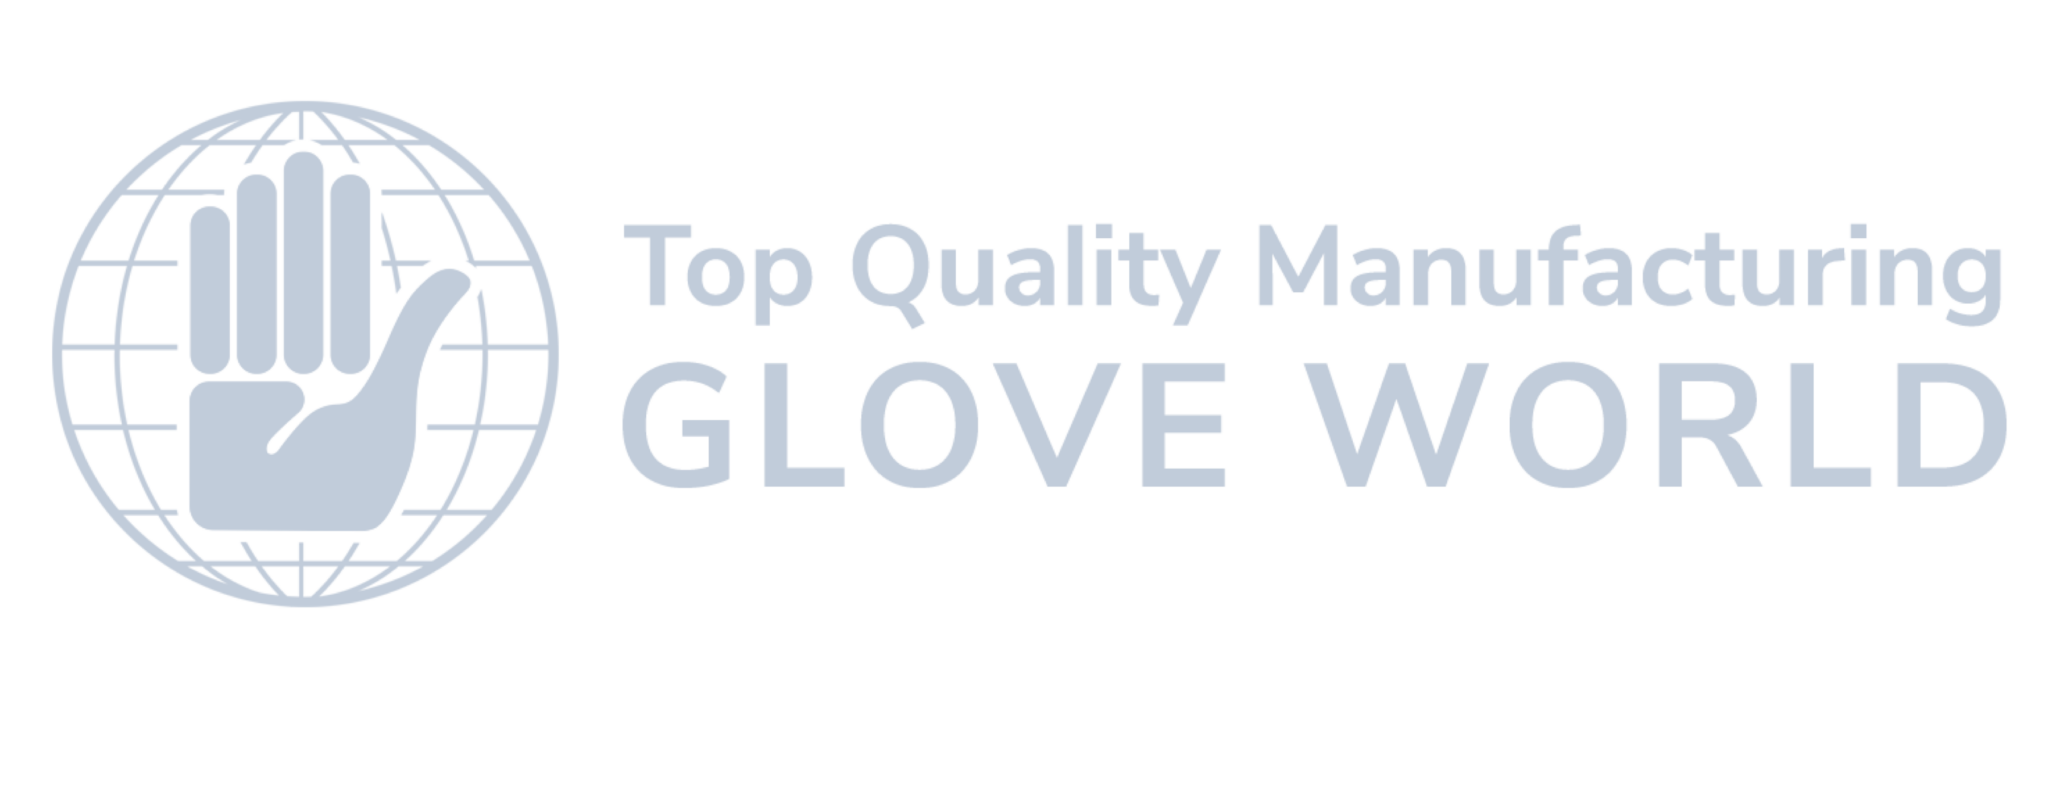 Glove World logo